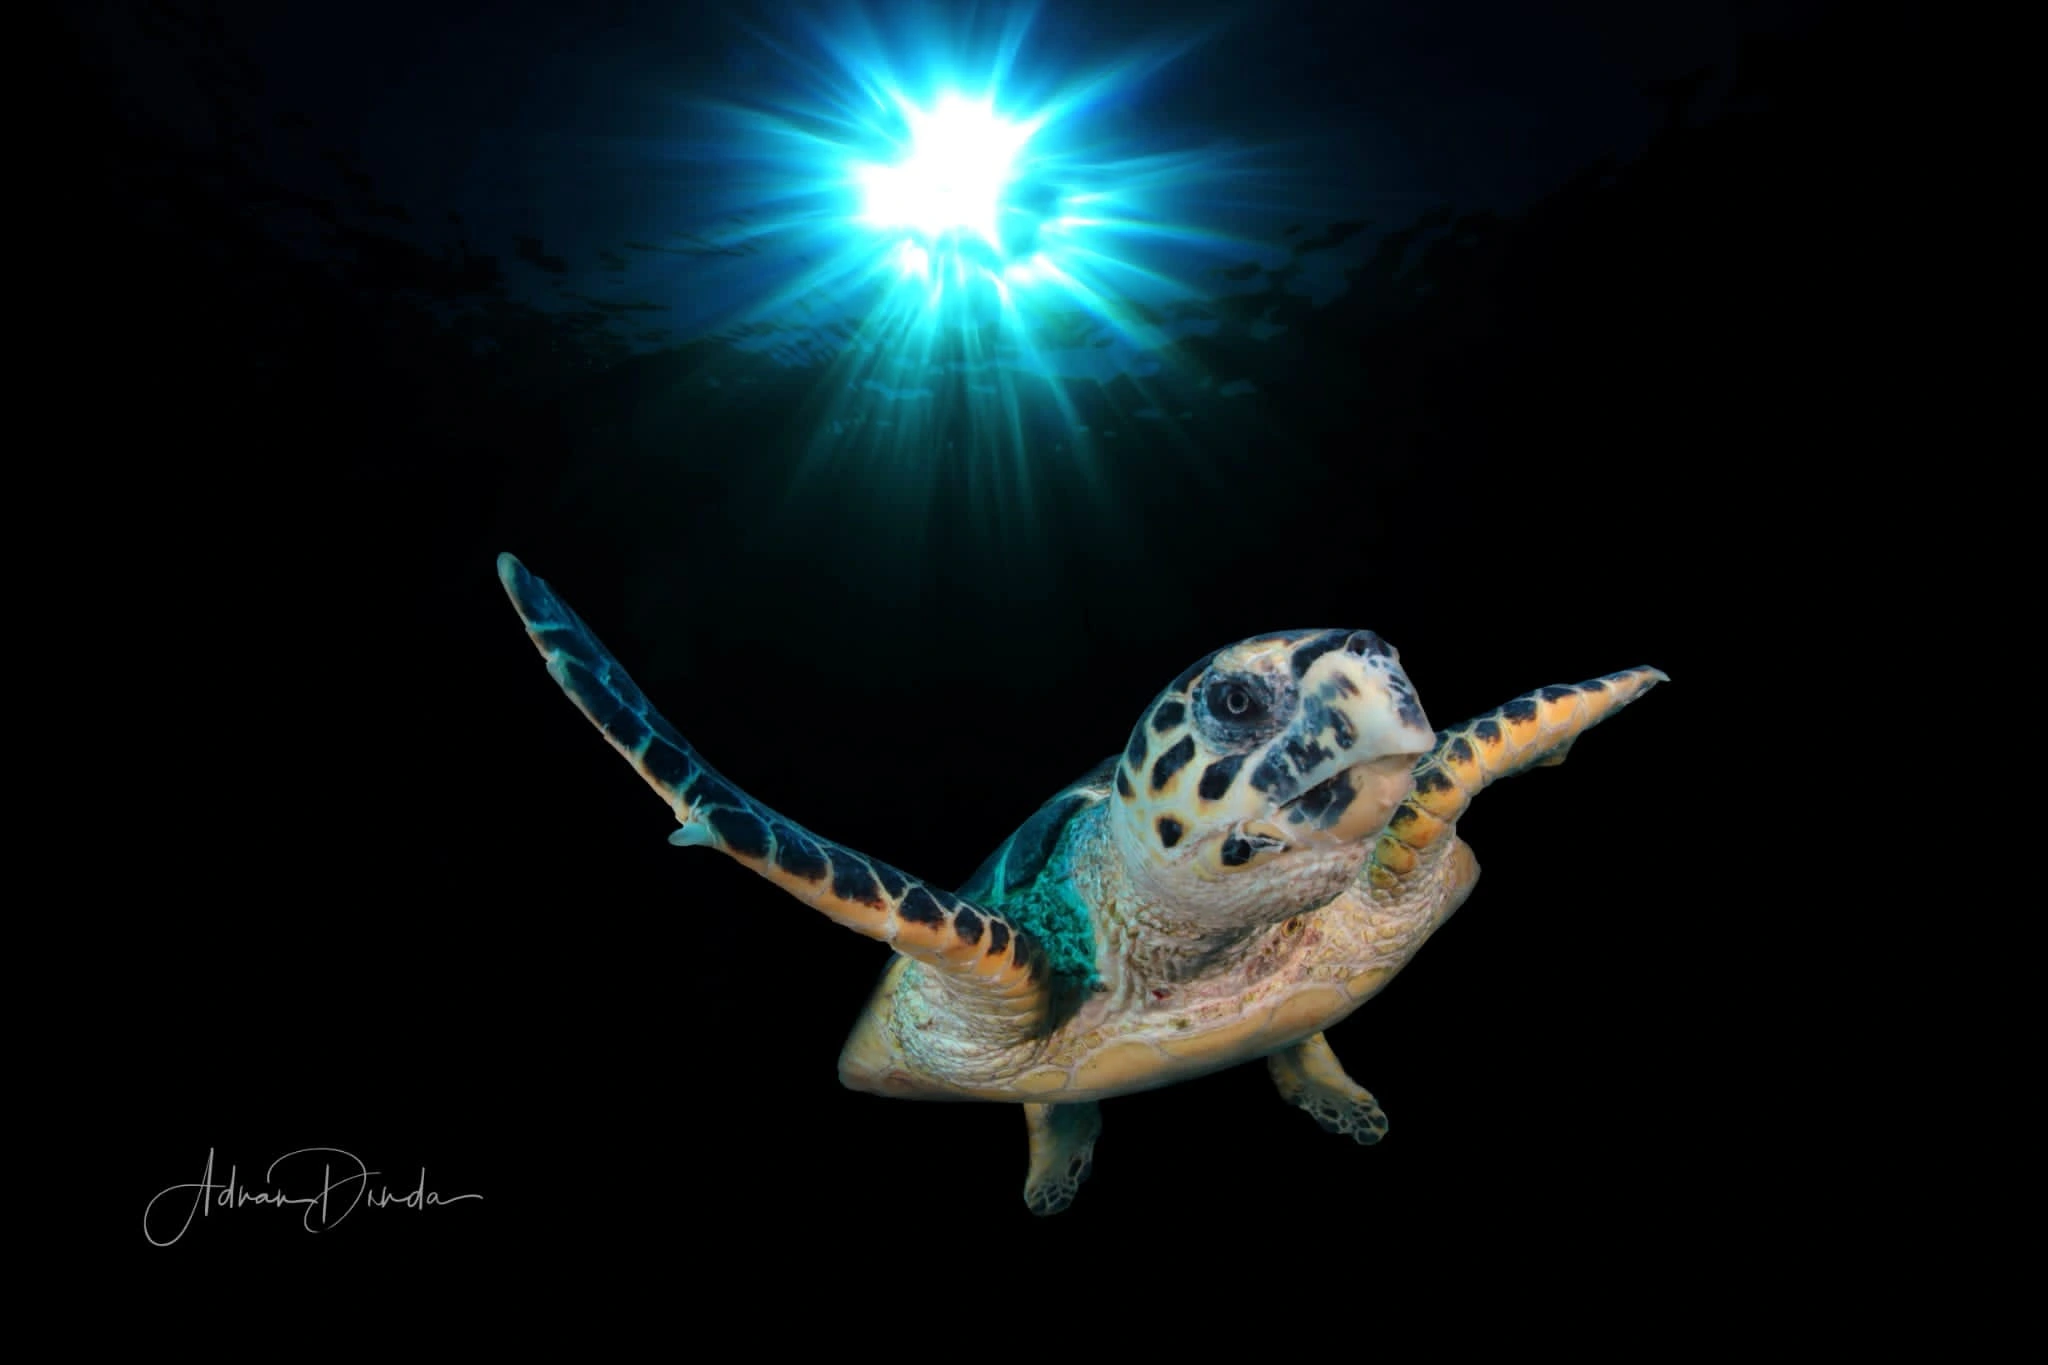 turtle under water